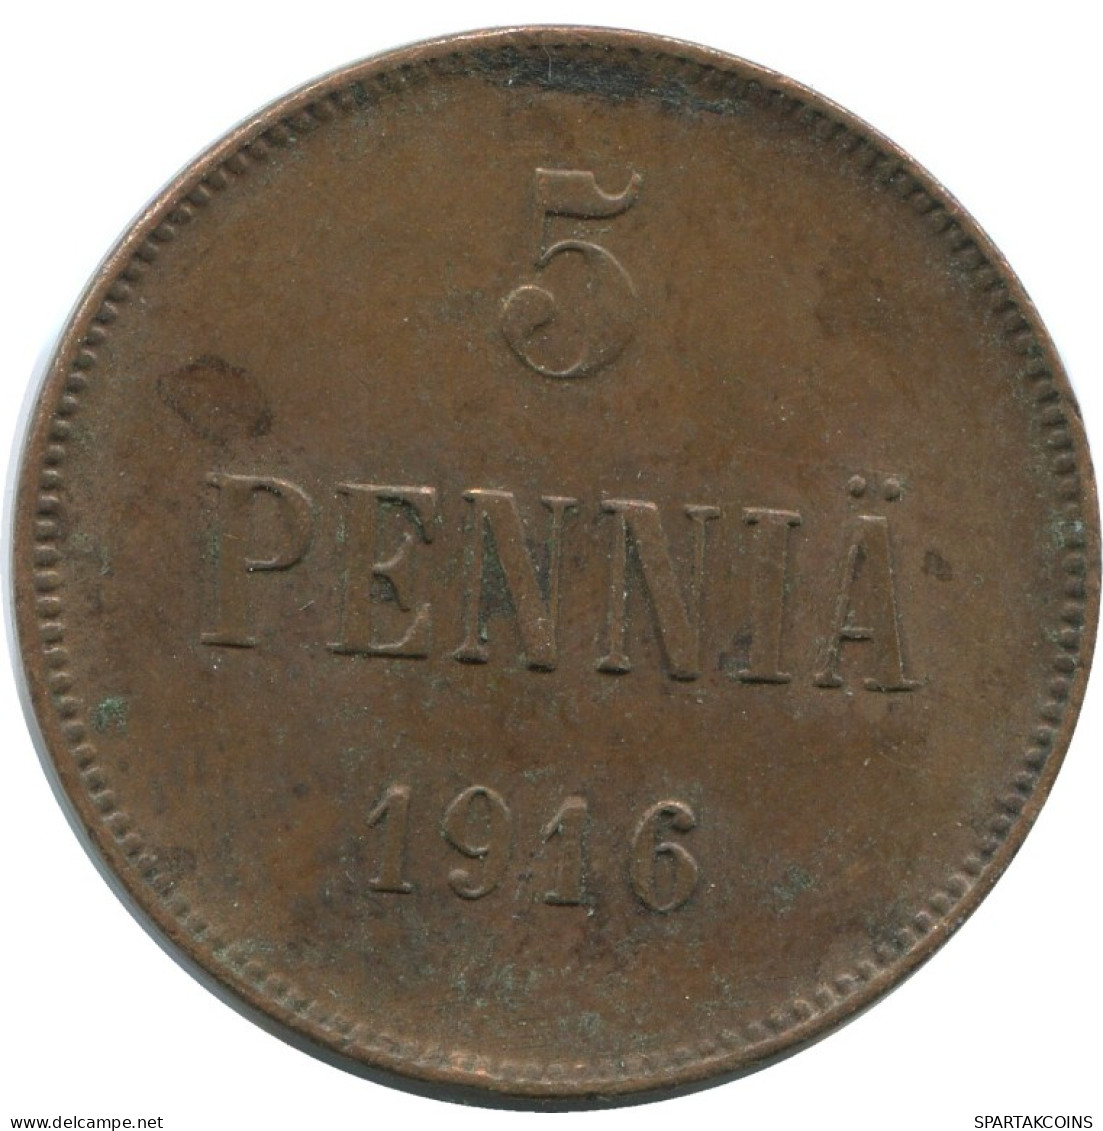 5 PENNIA 1916 FINLAND Coin RUSSIA EMPIRE #AB198.5.U.A - Finlandia